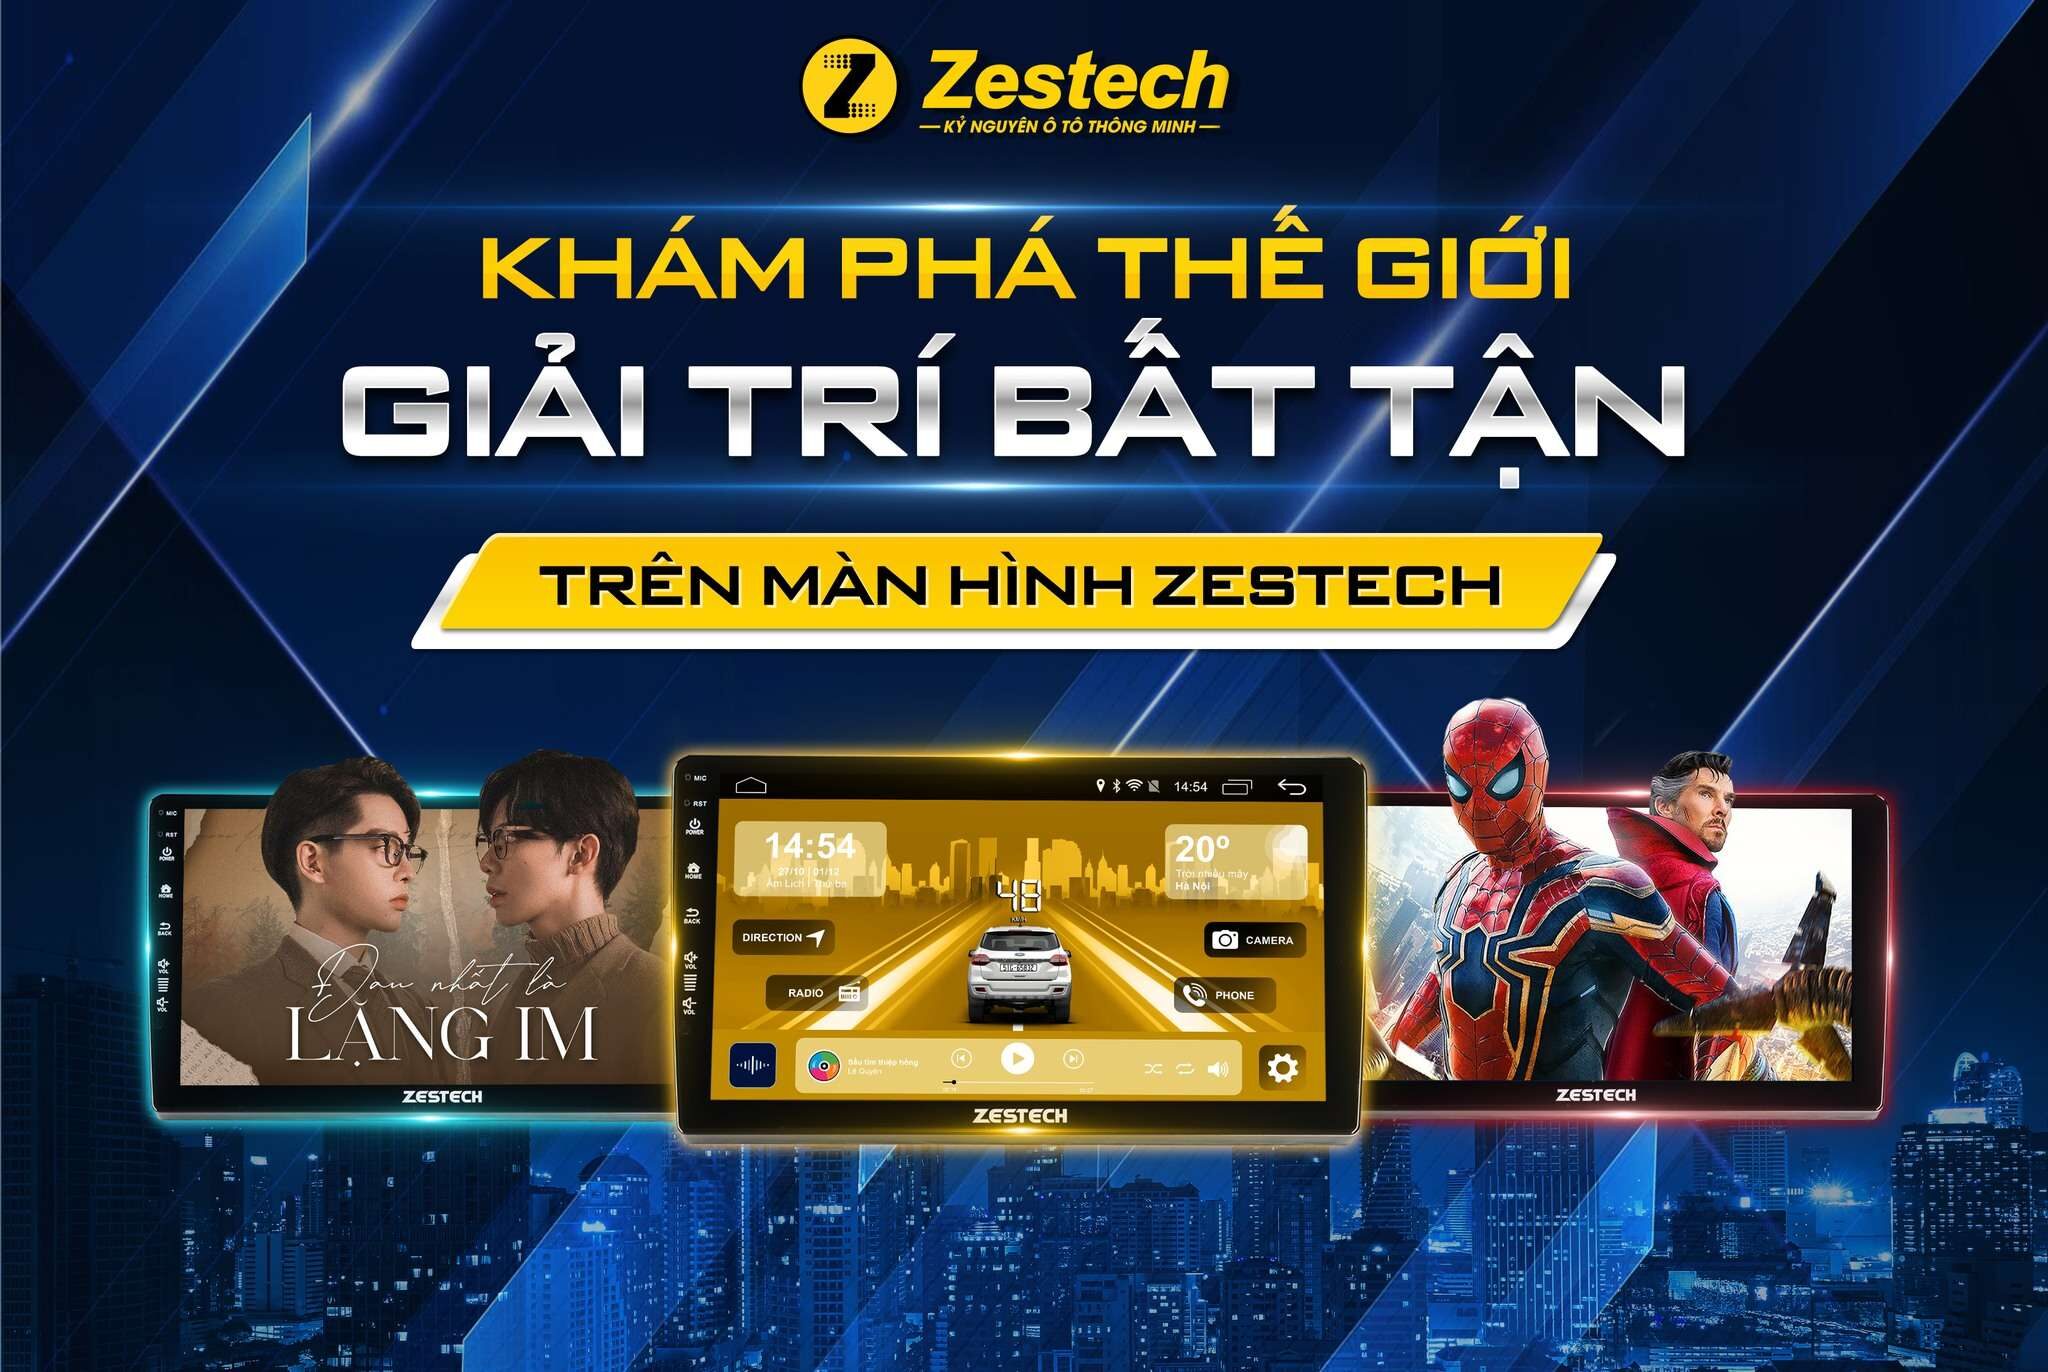 man-hinh-zestech-giai-tri-bat-tan-bcar-9116215